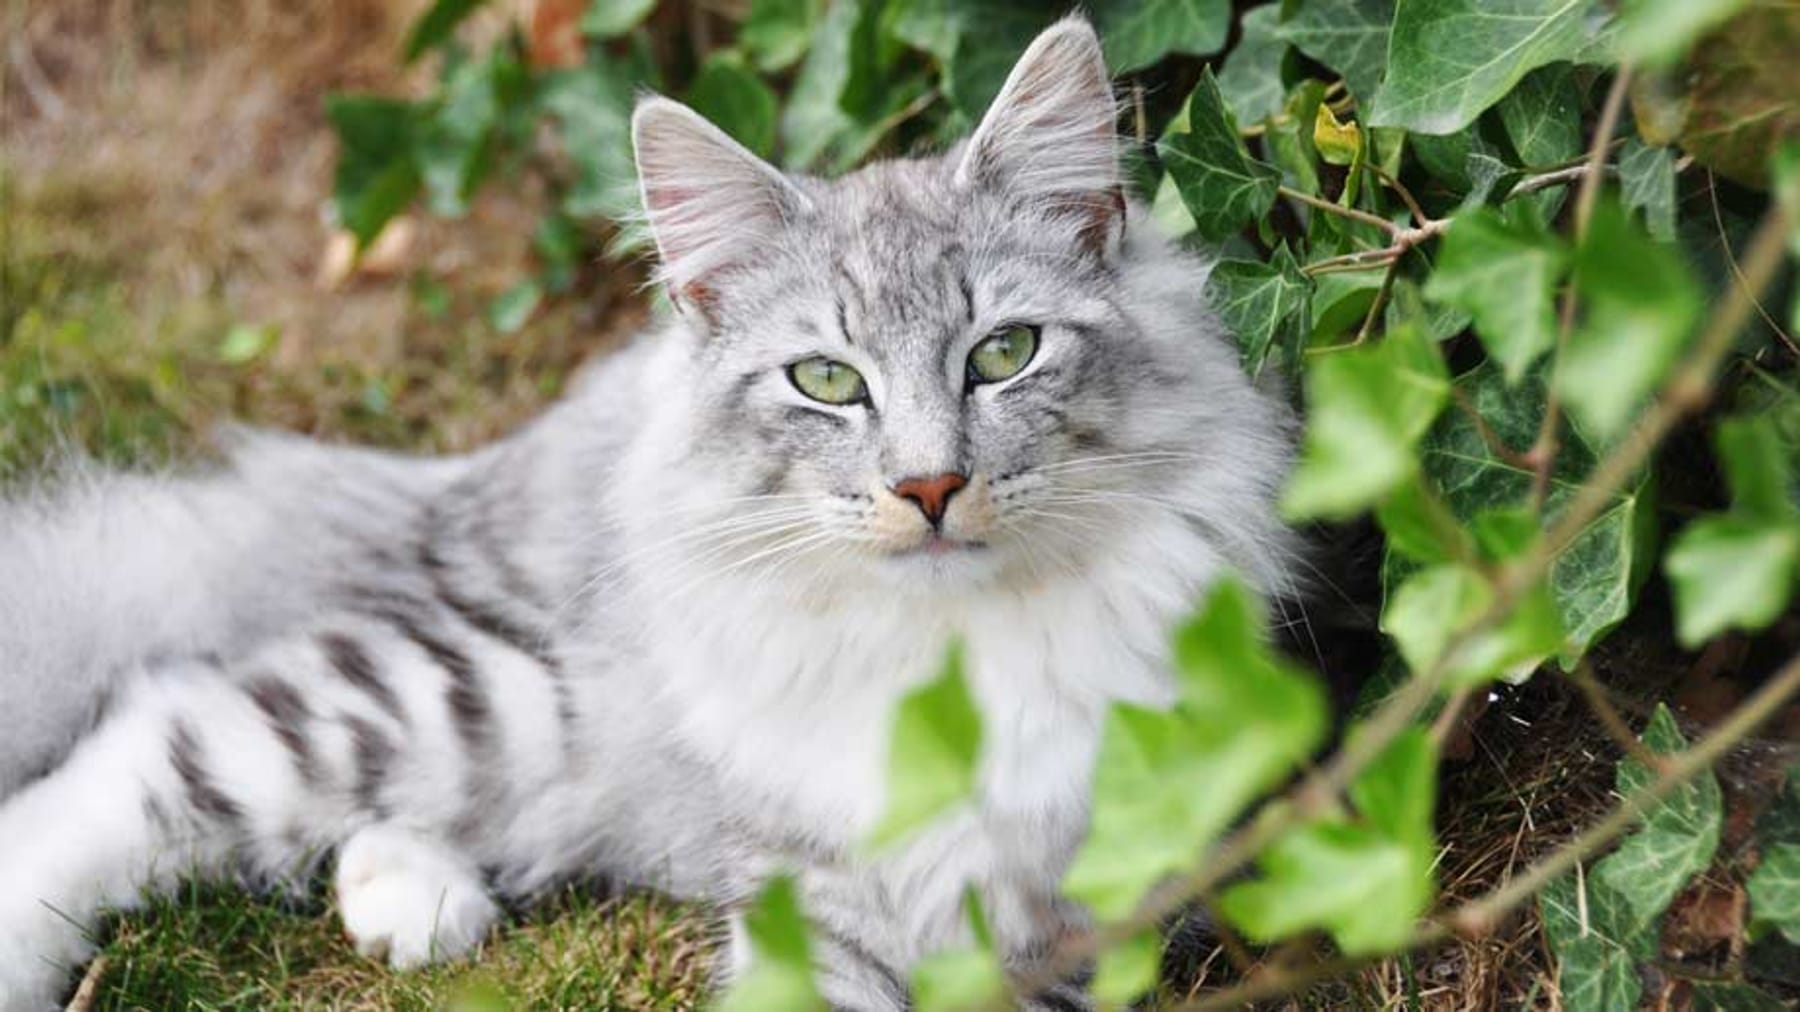 Katzen vertreiben: 8 tierfreundliche Tipps, um Katzen fernzuhalten